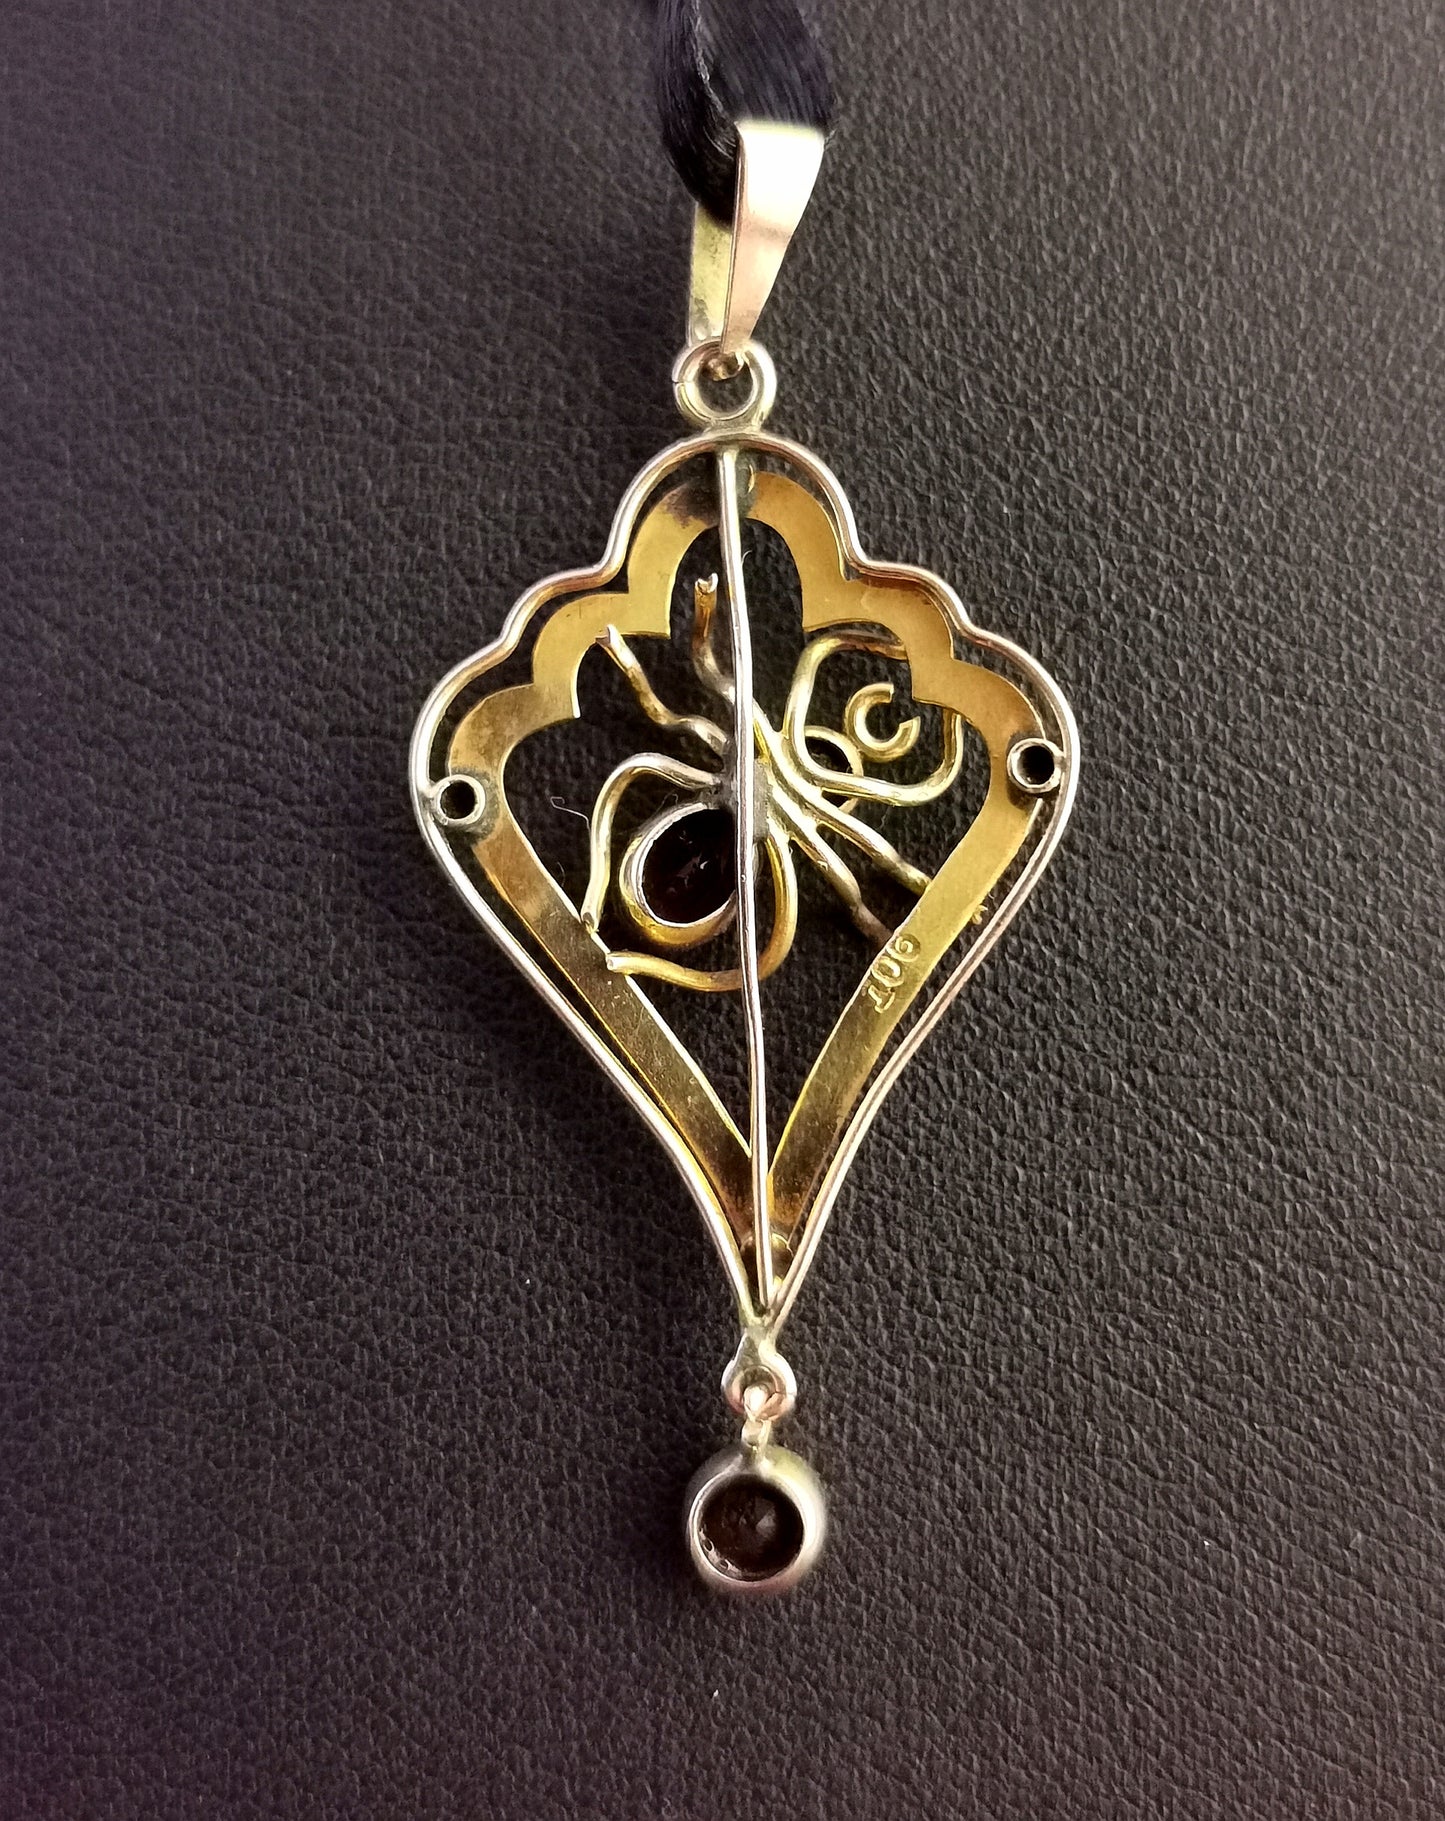 Antique 9ct gold Spider pendant, lavalier, Art Nouveau